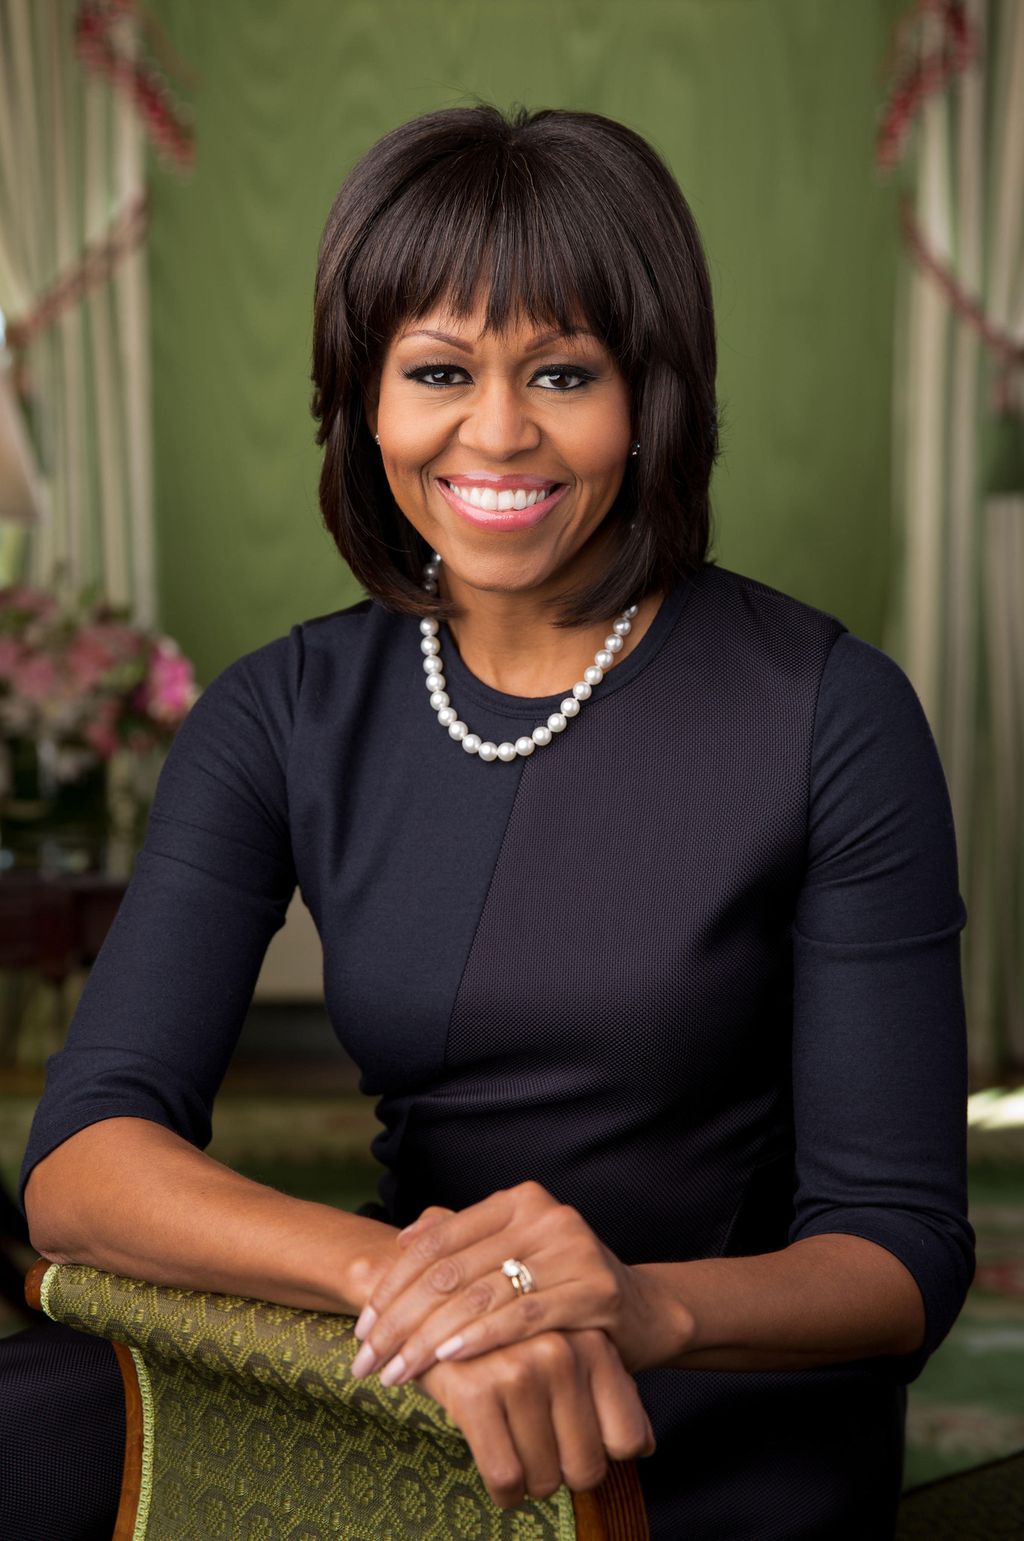 Michelle Obama antoi Meghanille kasvatusvinkkejä – sai herttuattaren sanattomaksi